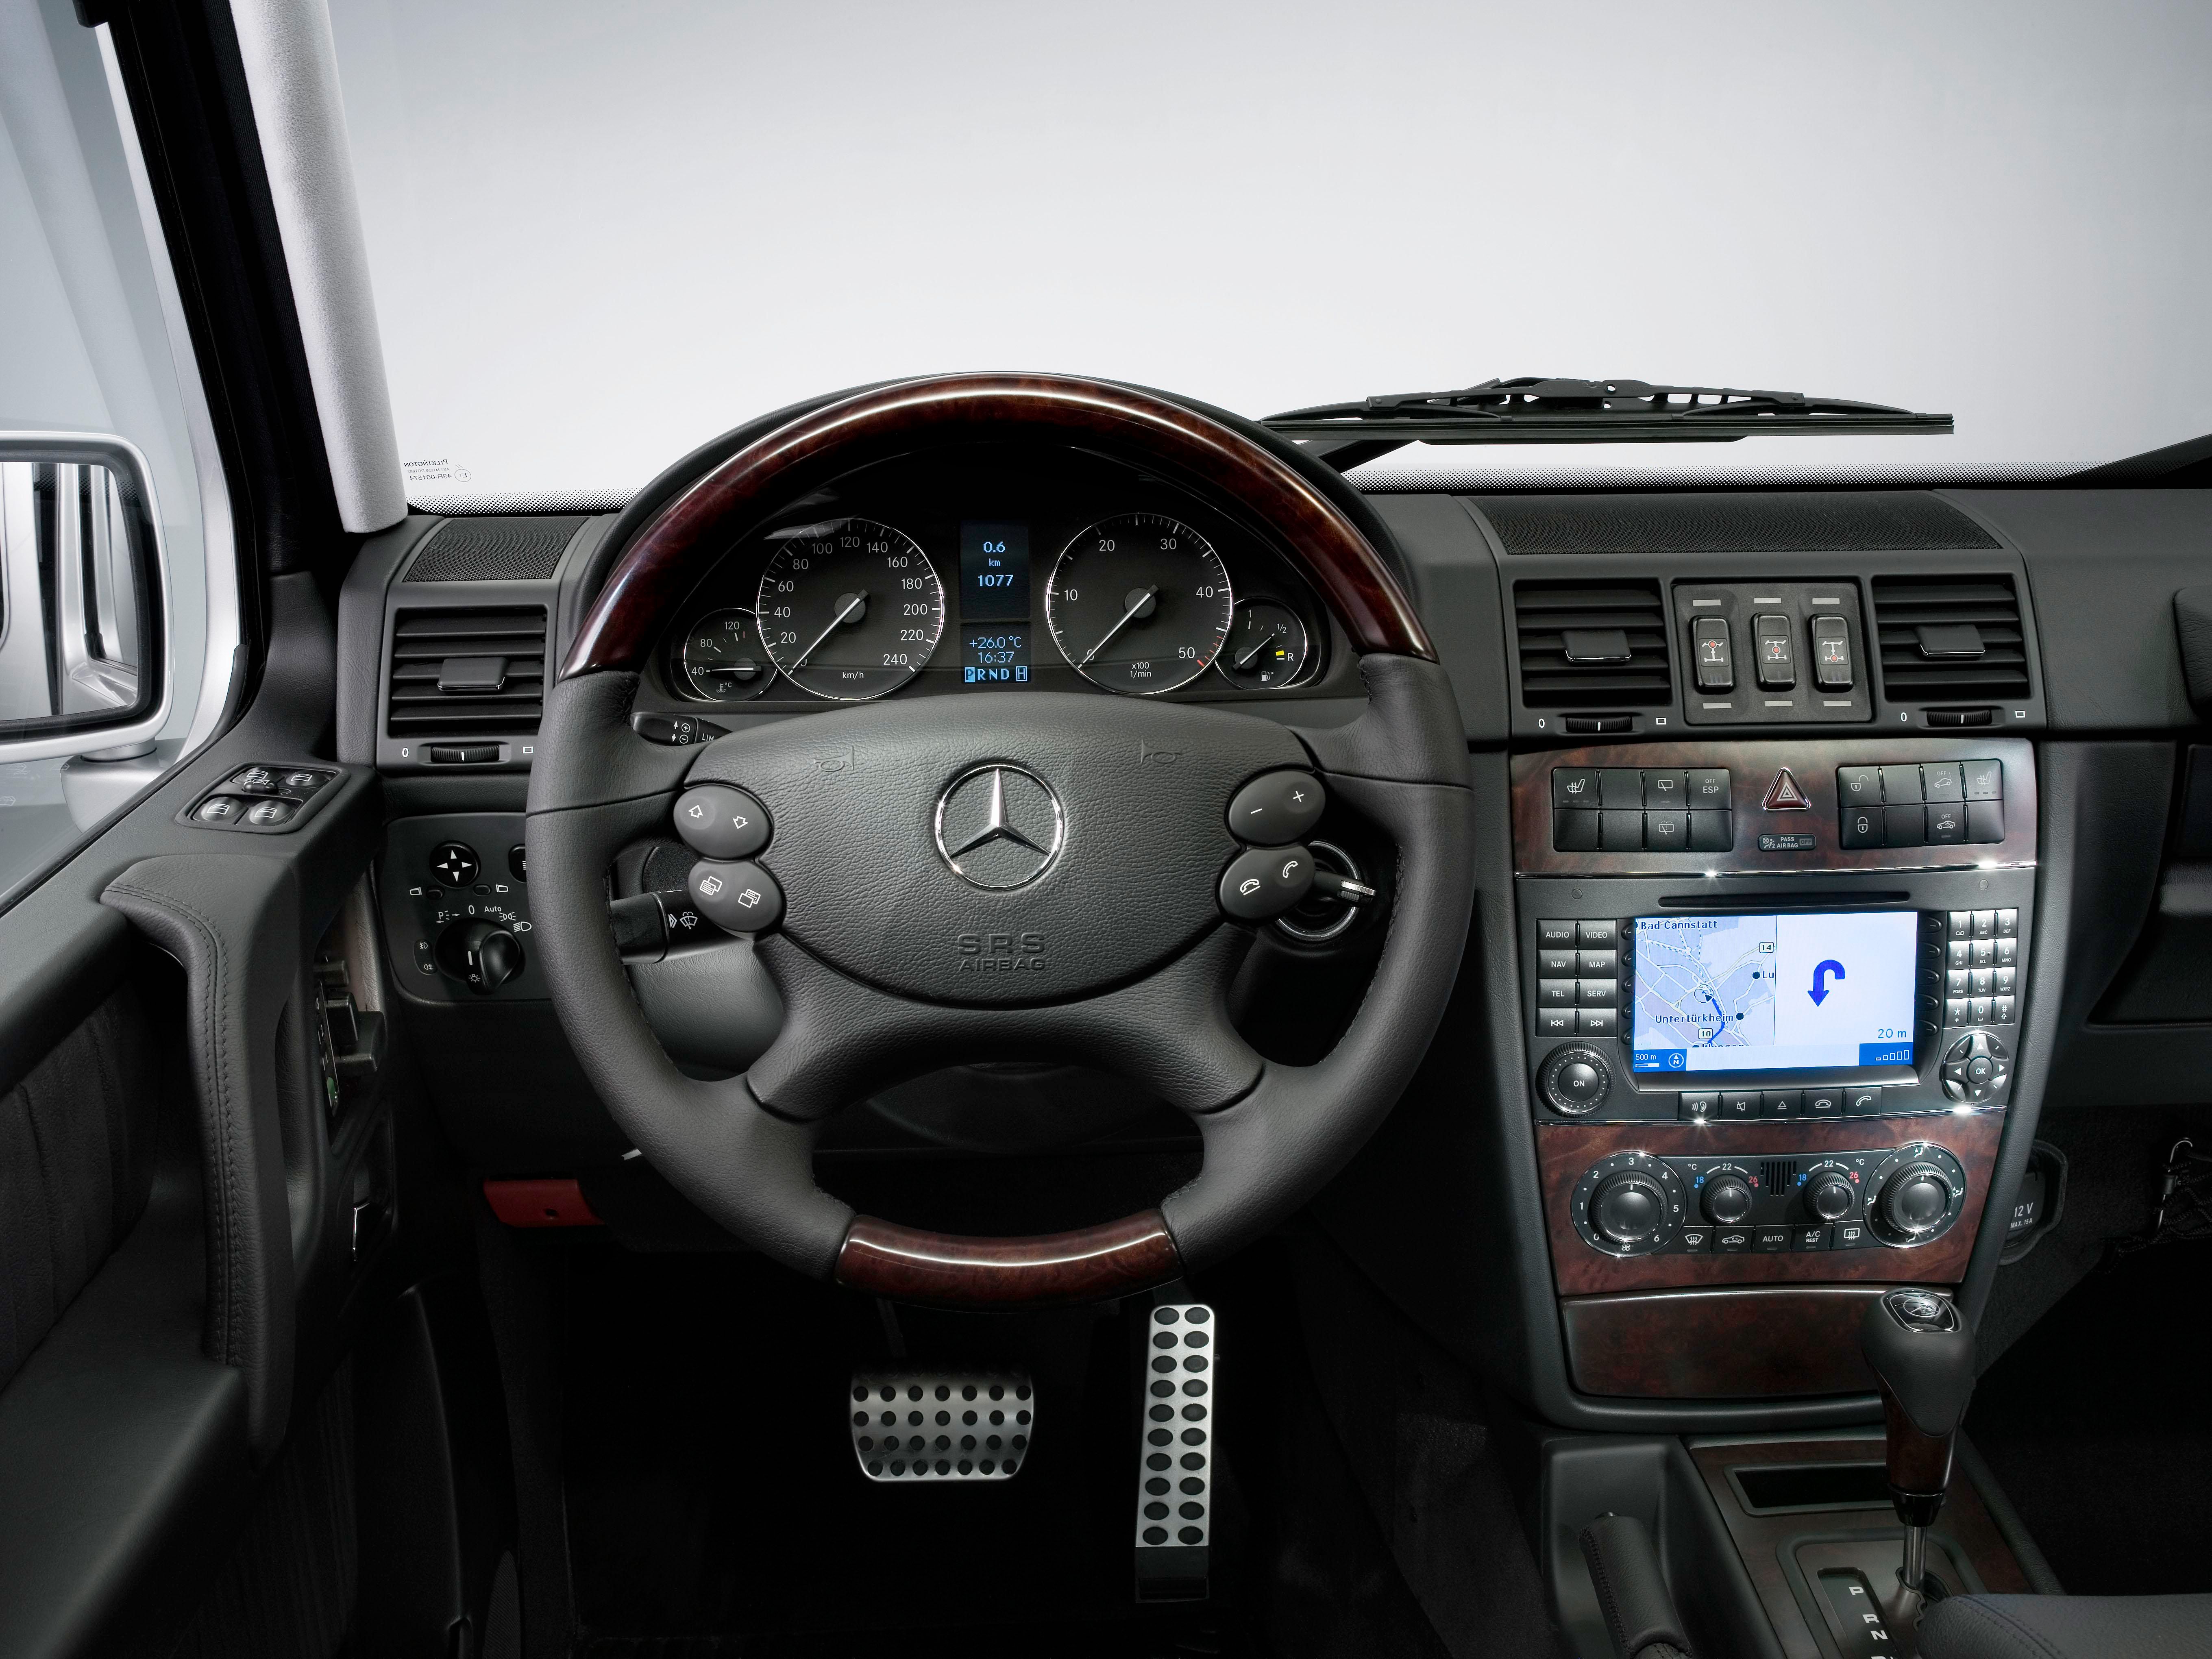 2007 Mercedes G-Class Facelift